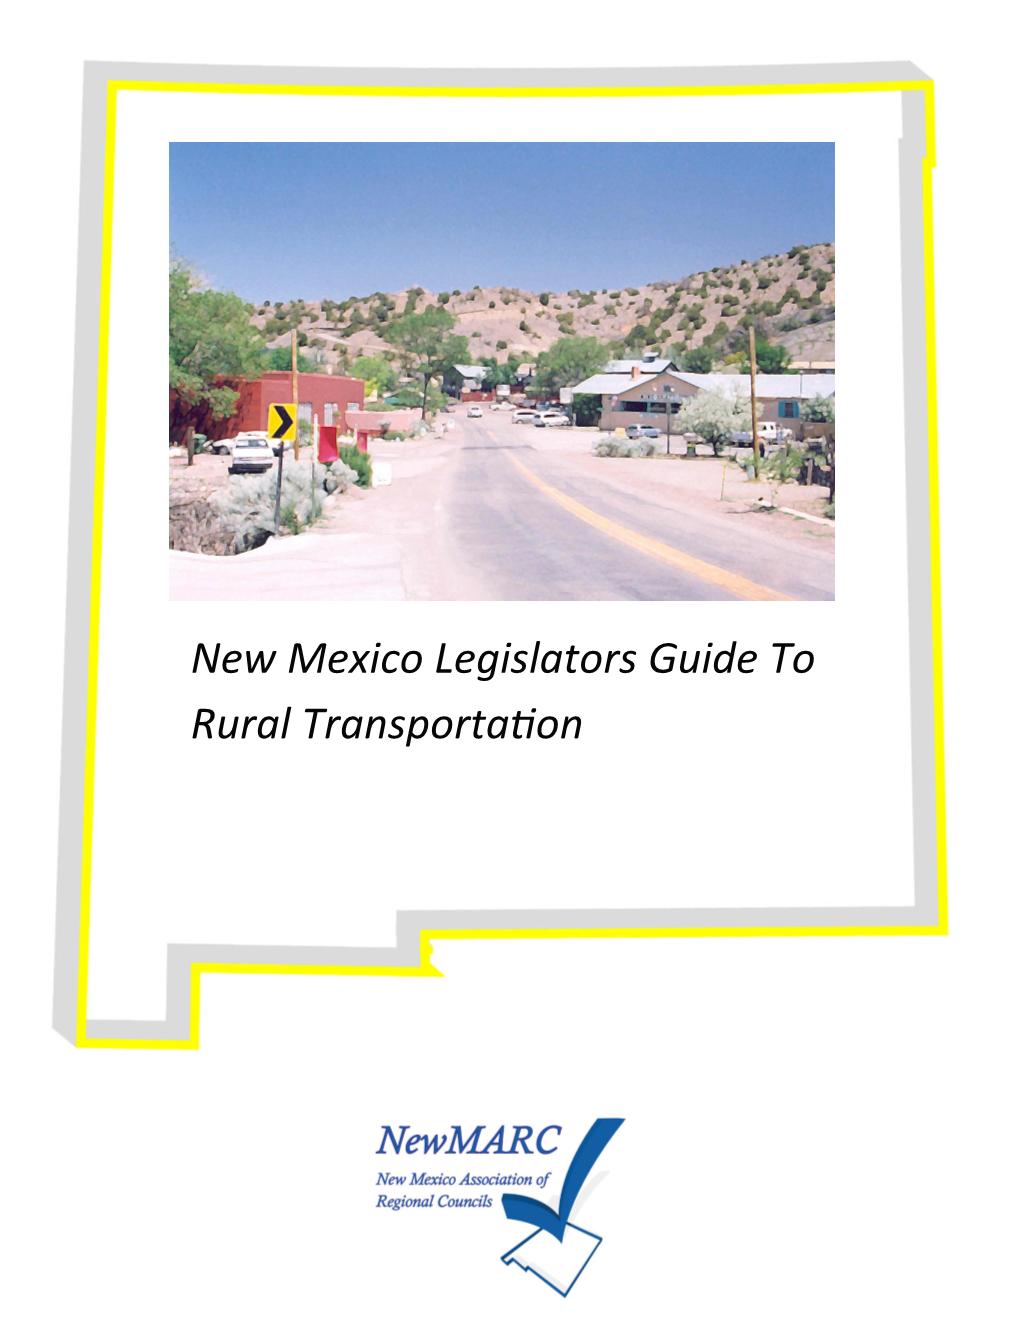 New Mexico Legislators Guide to Rural Transportafion